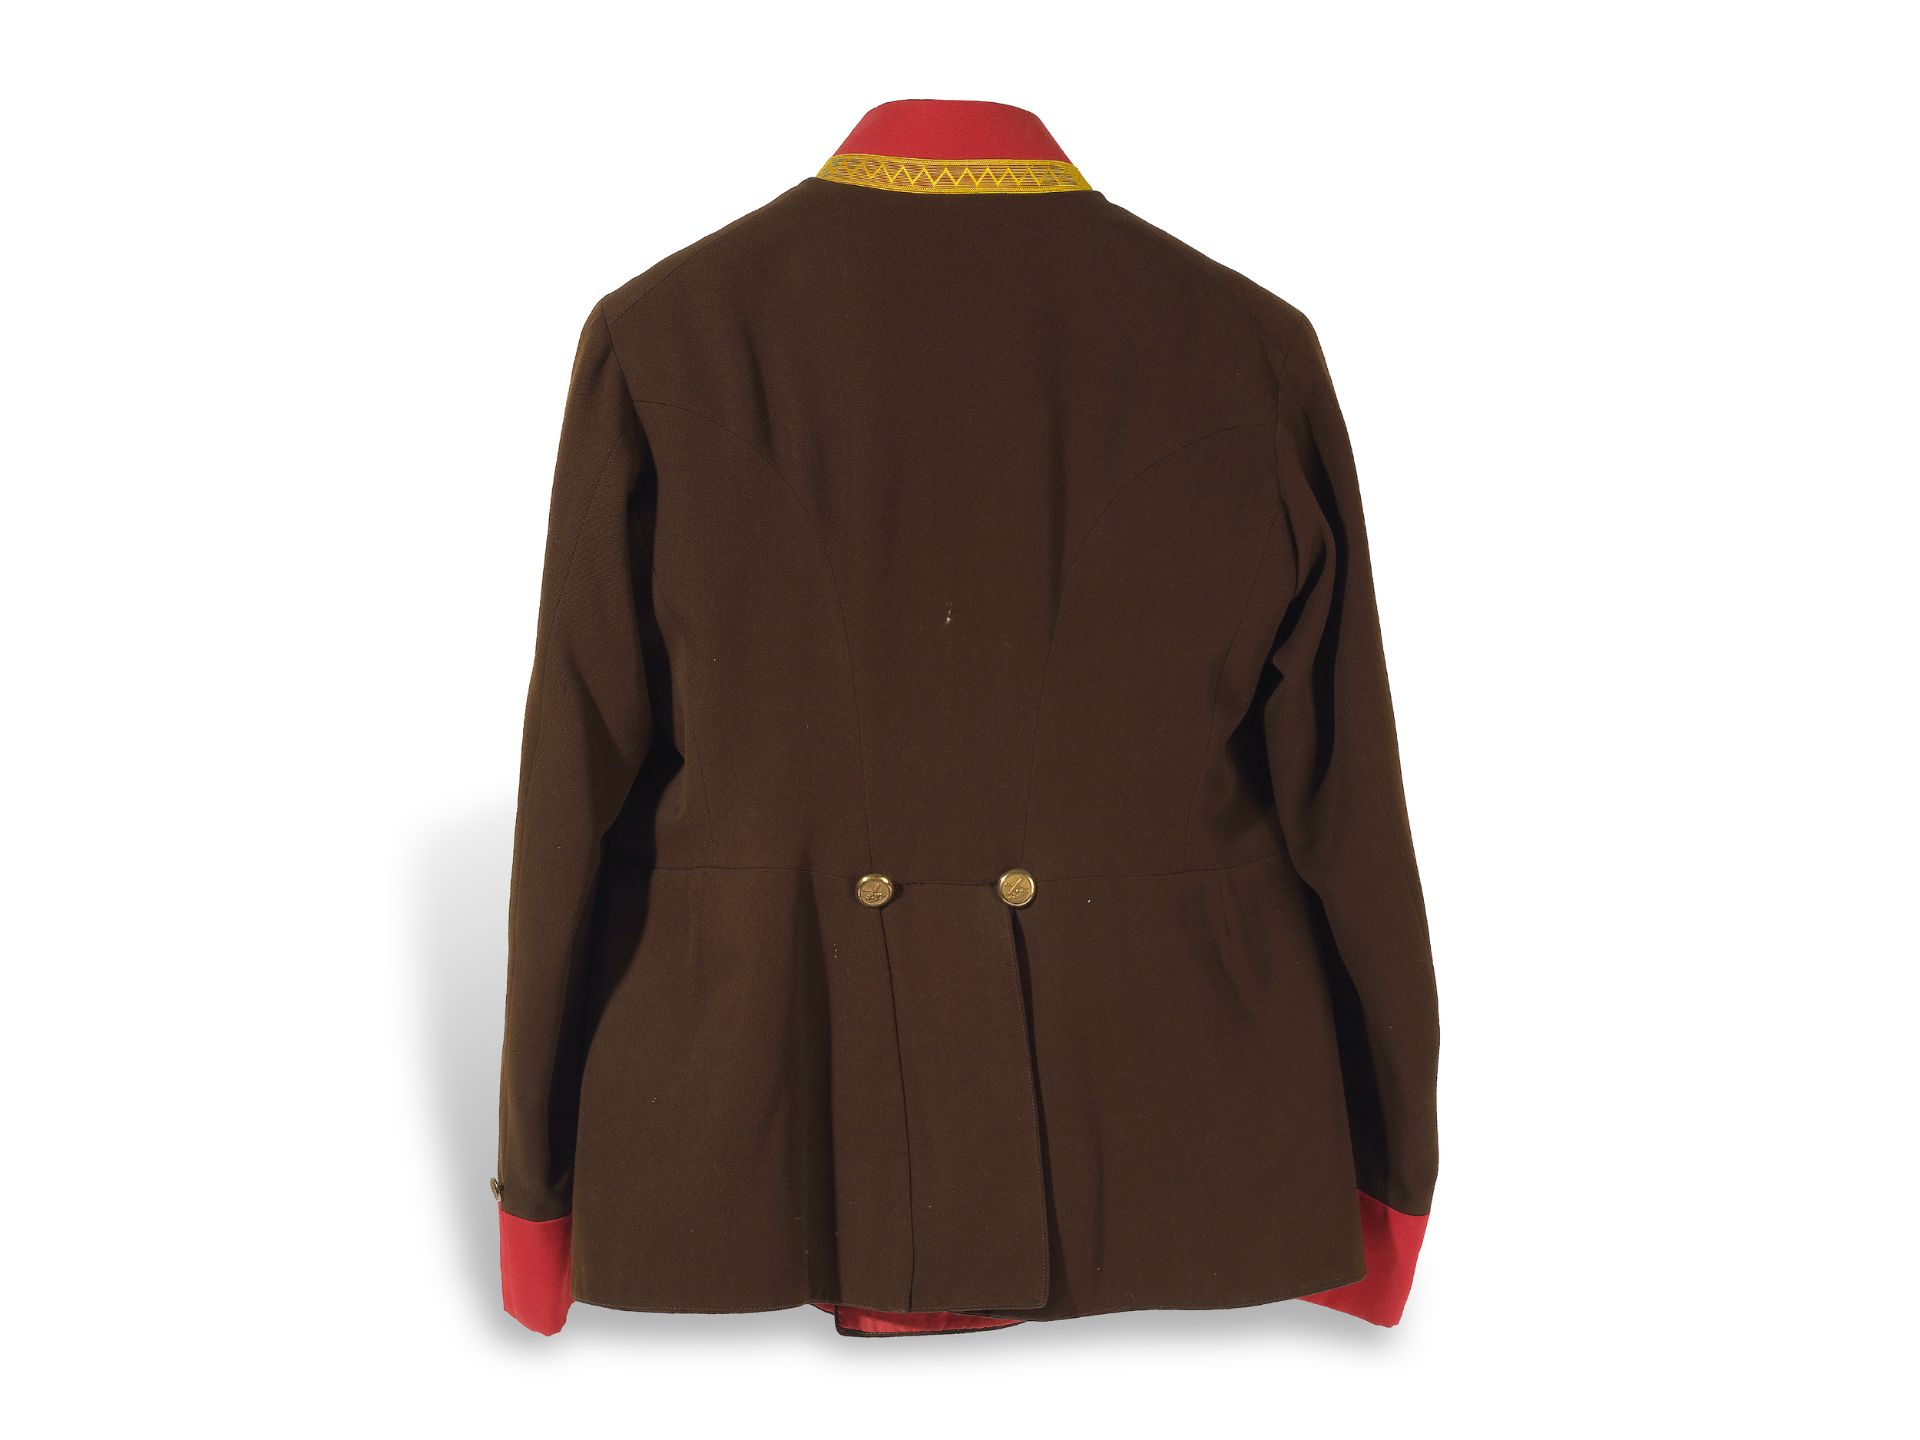 Artillery uniform jacket?, 
K. u. k. Monarchy, 
Ca. 1900/10 - Image 2 of 3